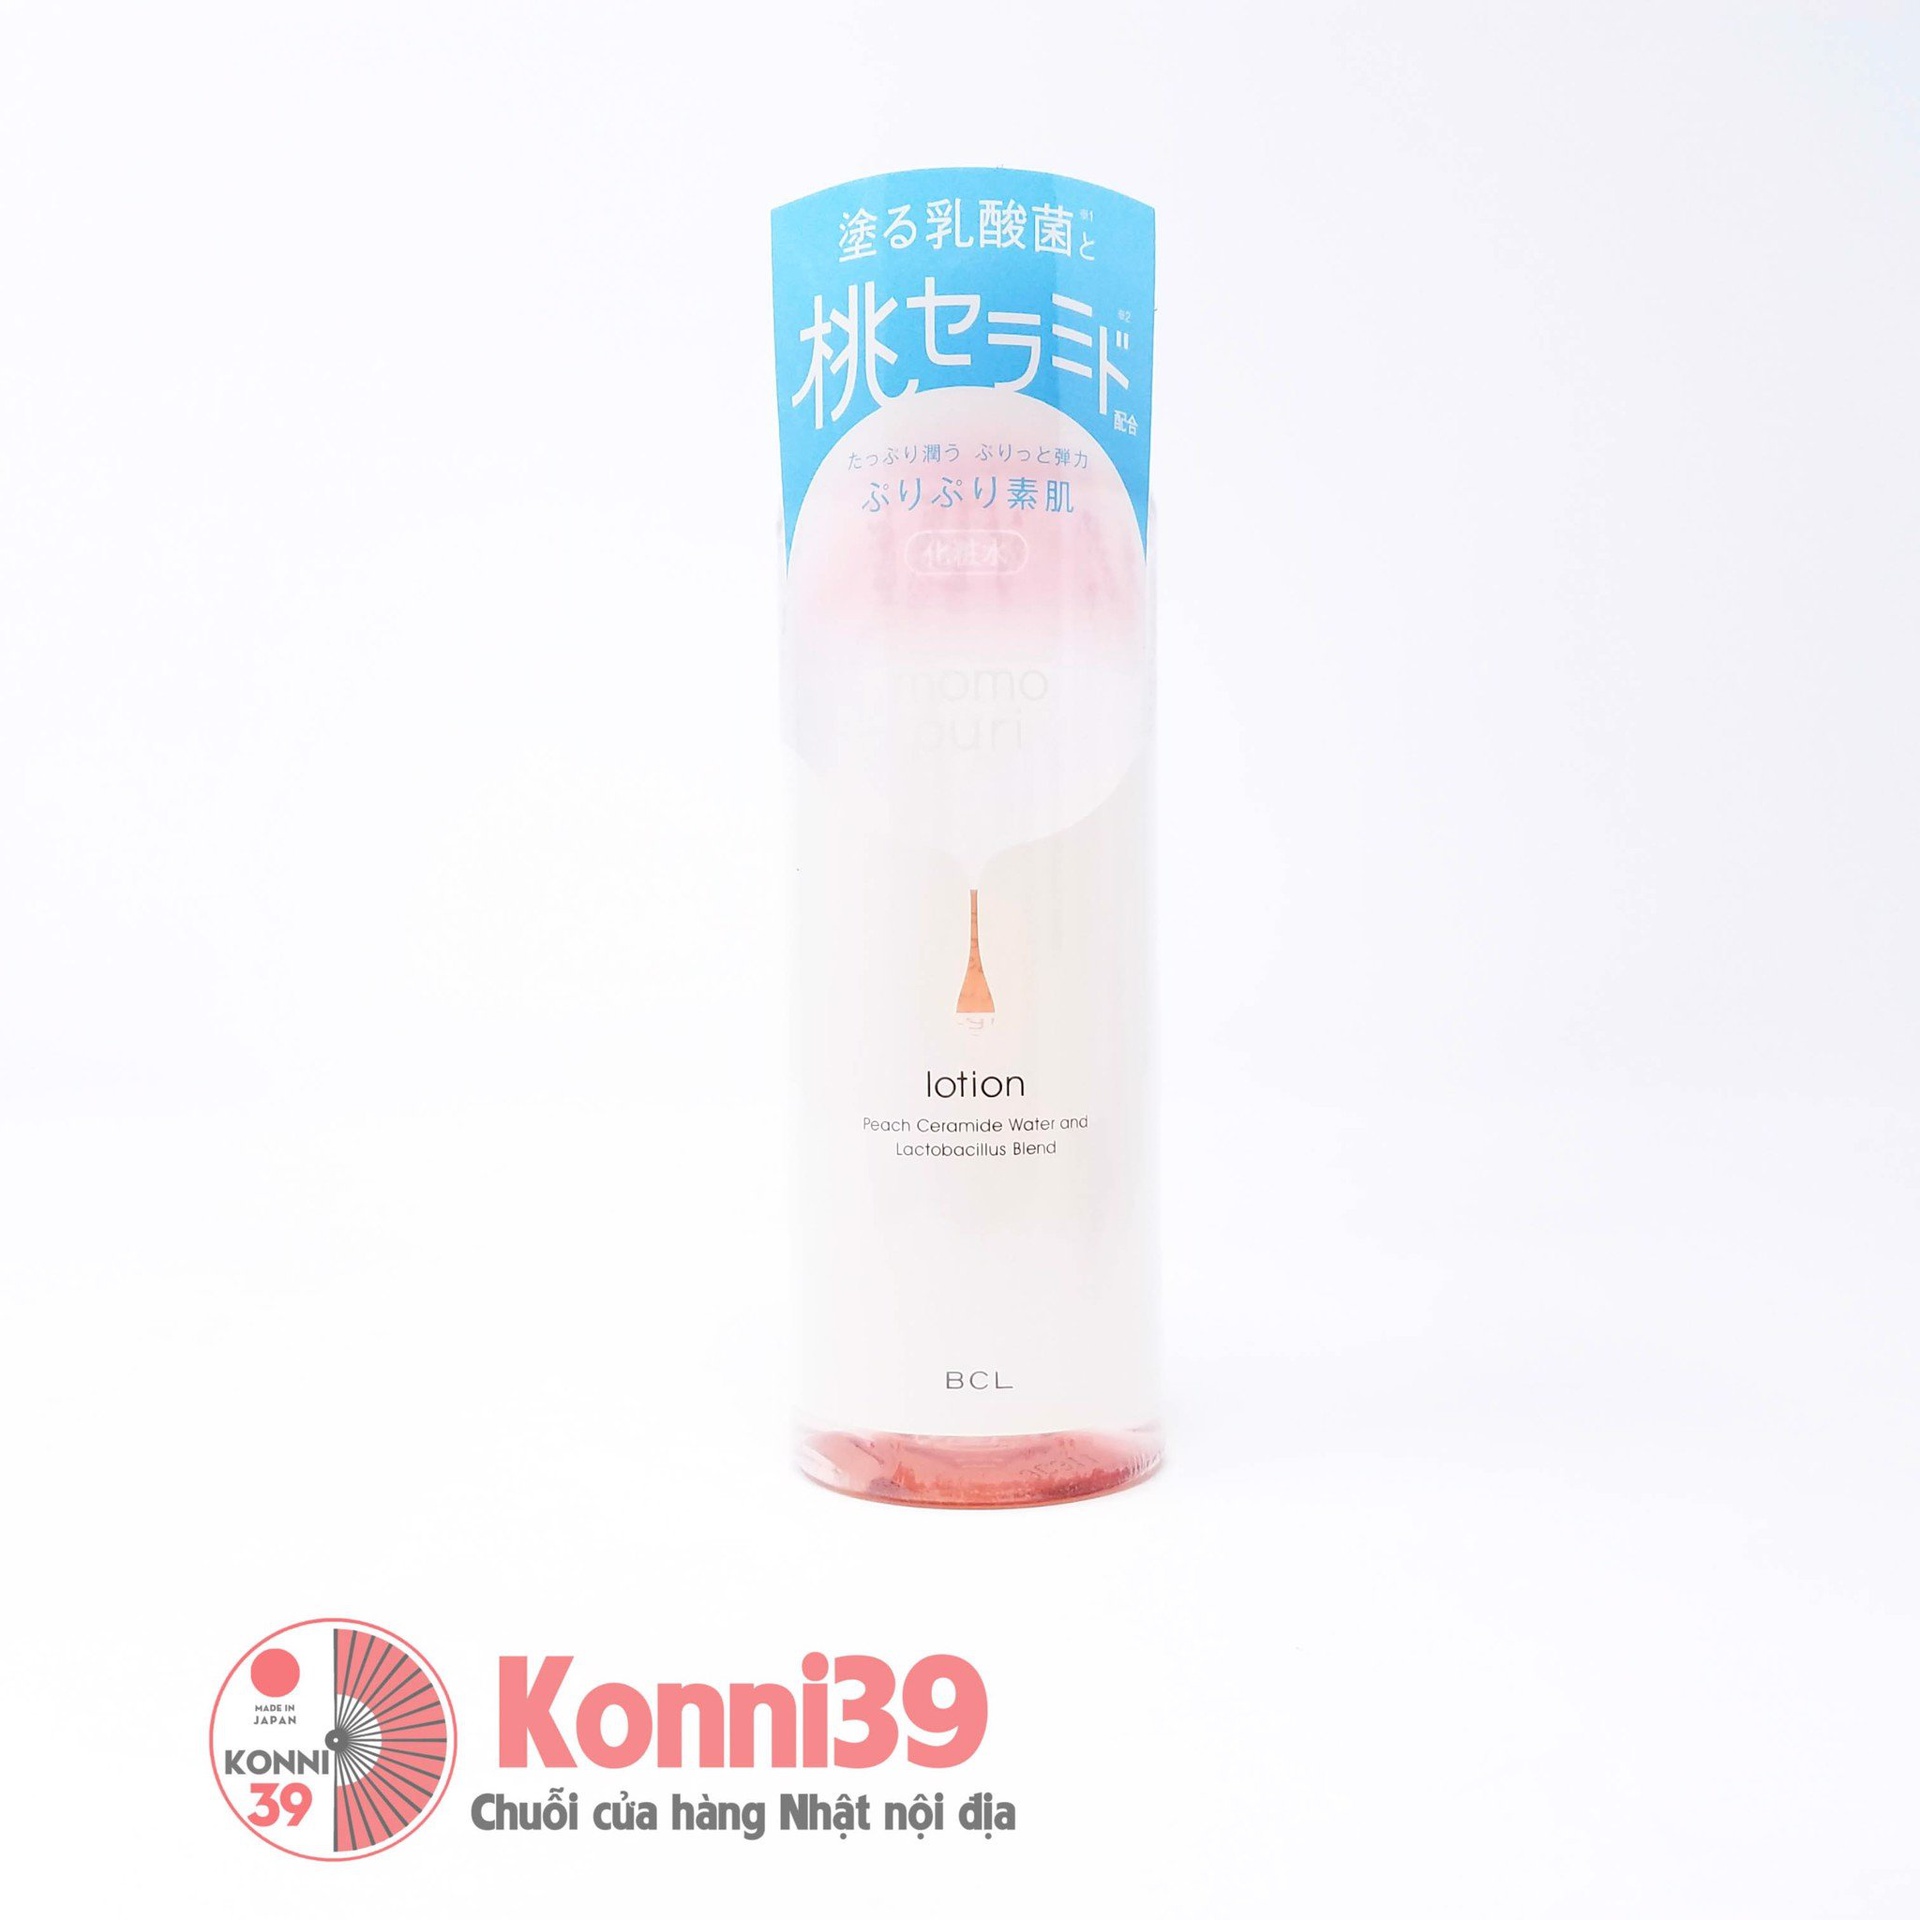 Nước hoa hồng BCL Ceramide quả đào Momo Puri dưỡng bảo vệ da khỏe mịn 200ml